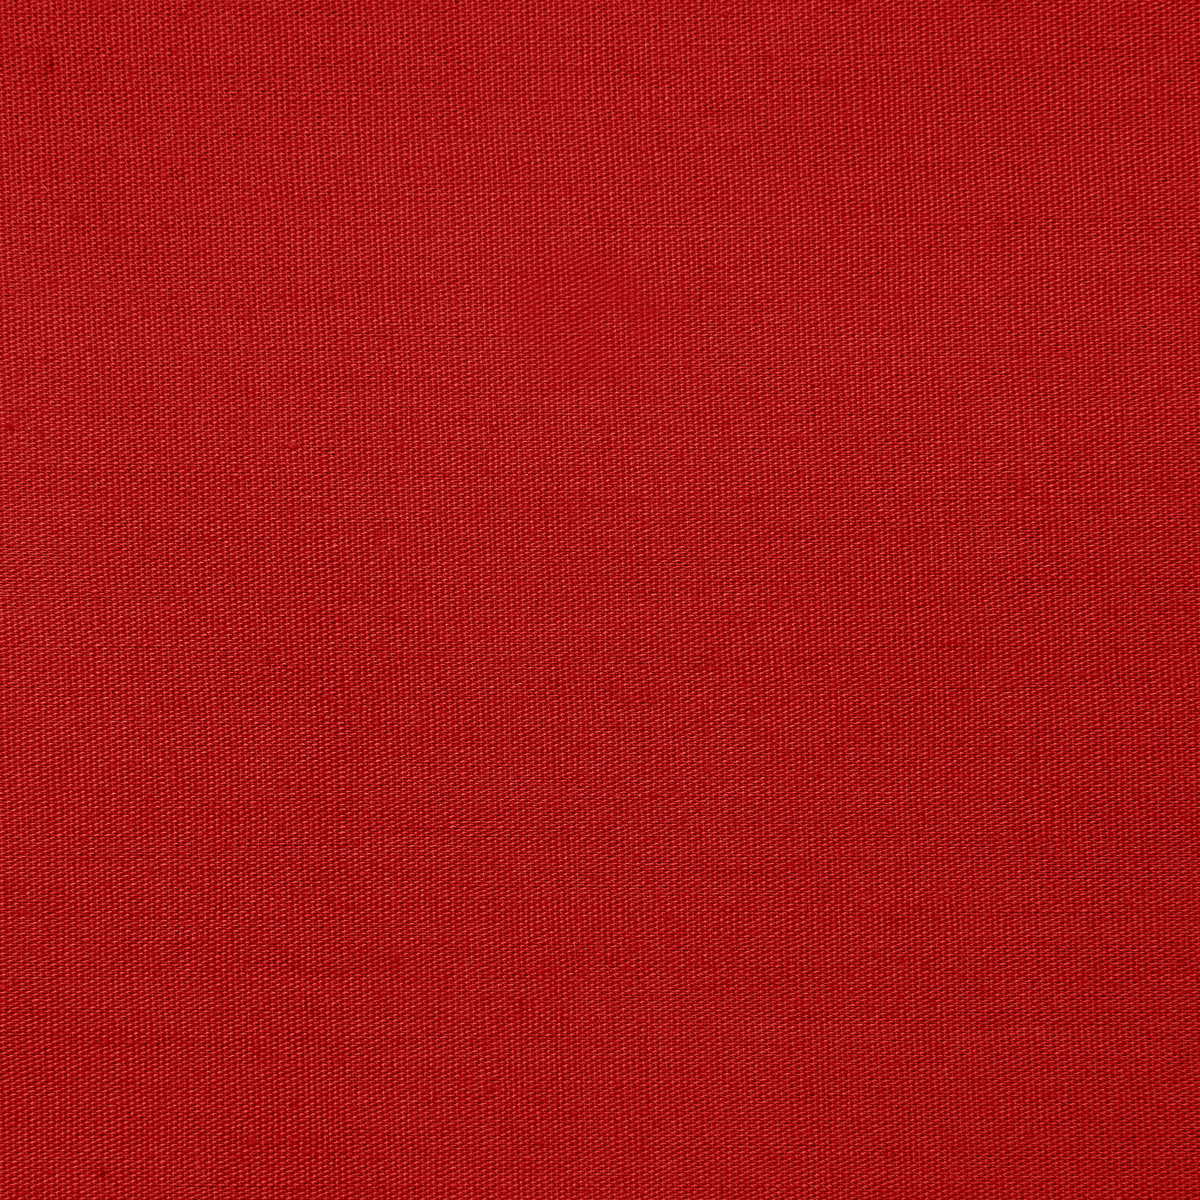 Biertisch Tischdecke Uni Polyester-80x250-Rot